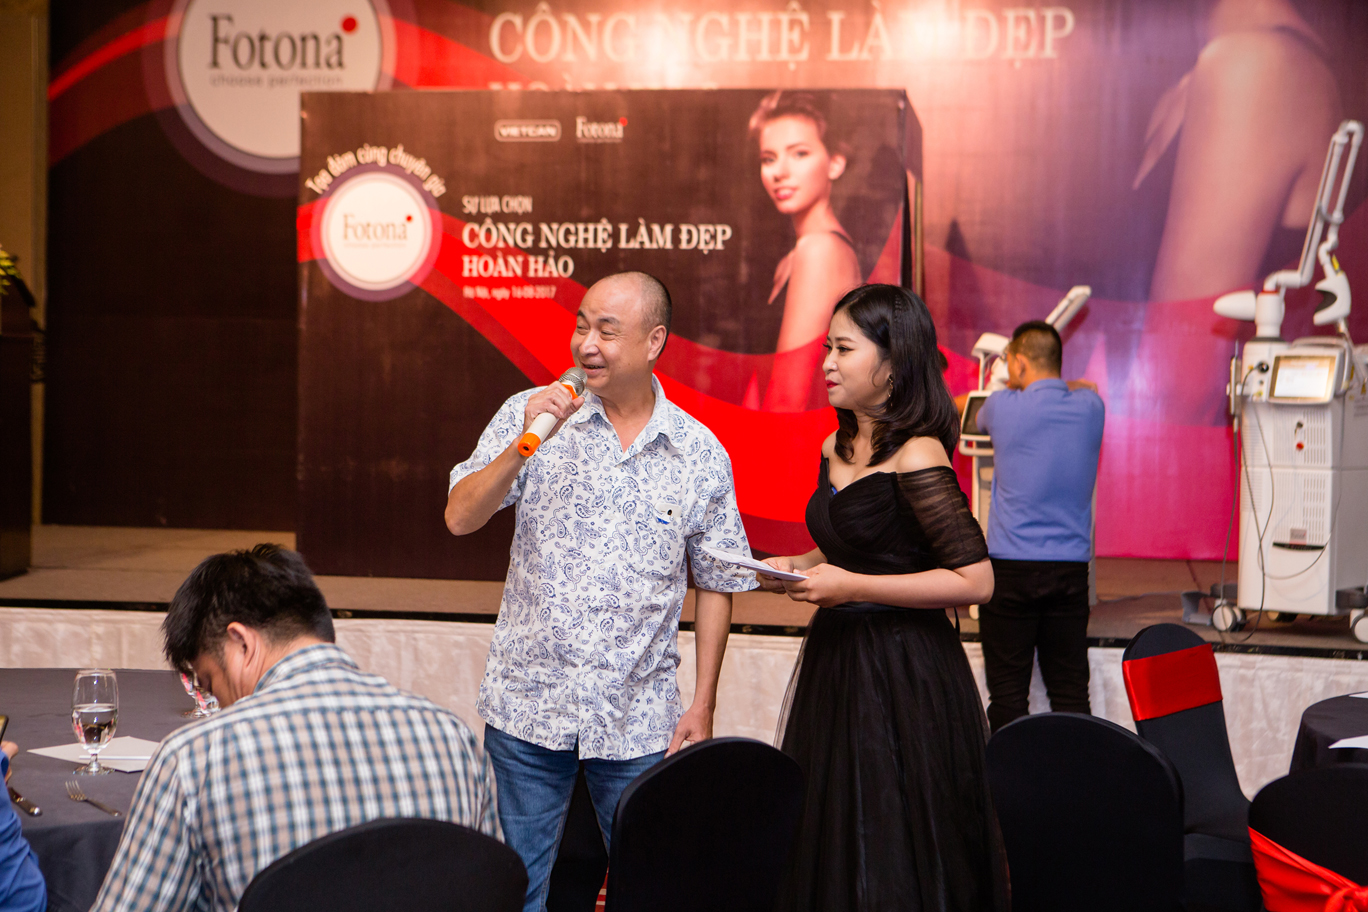 Fotona tại Hà Nội, 2017 - Đặt câu hỏi với chuyên gia.